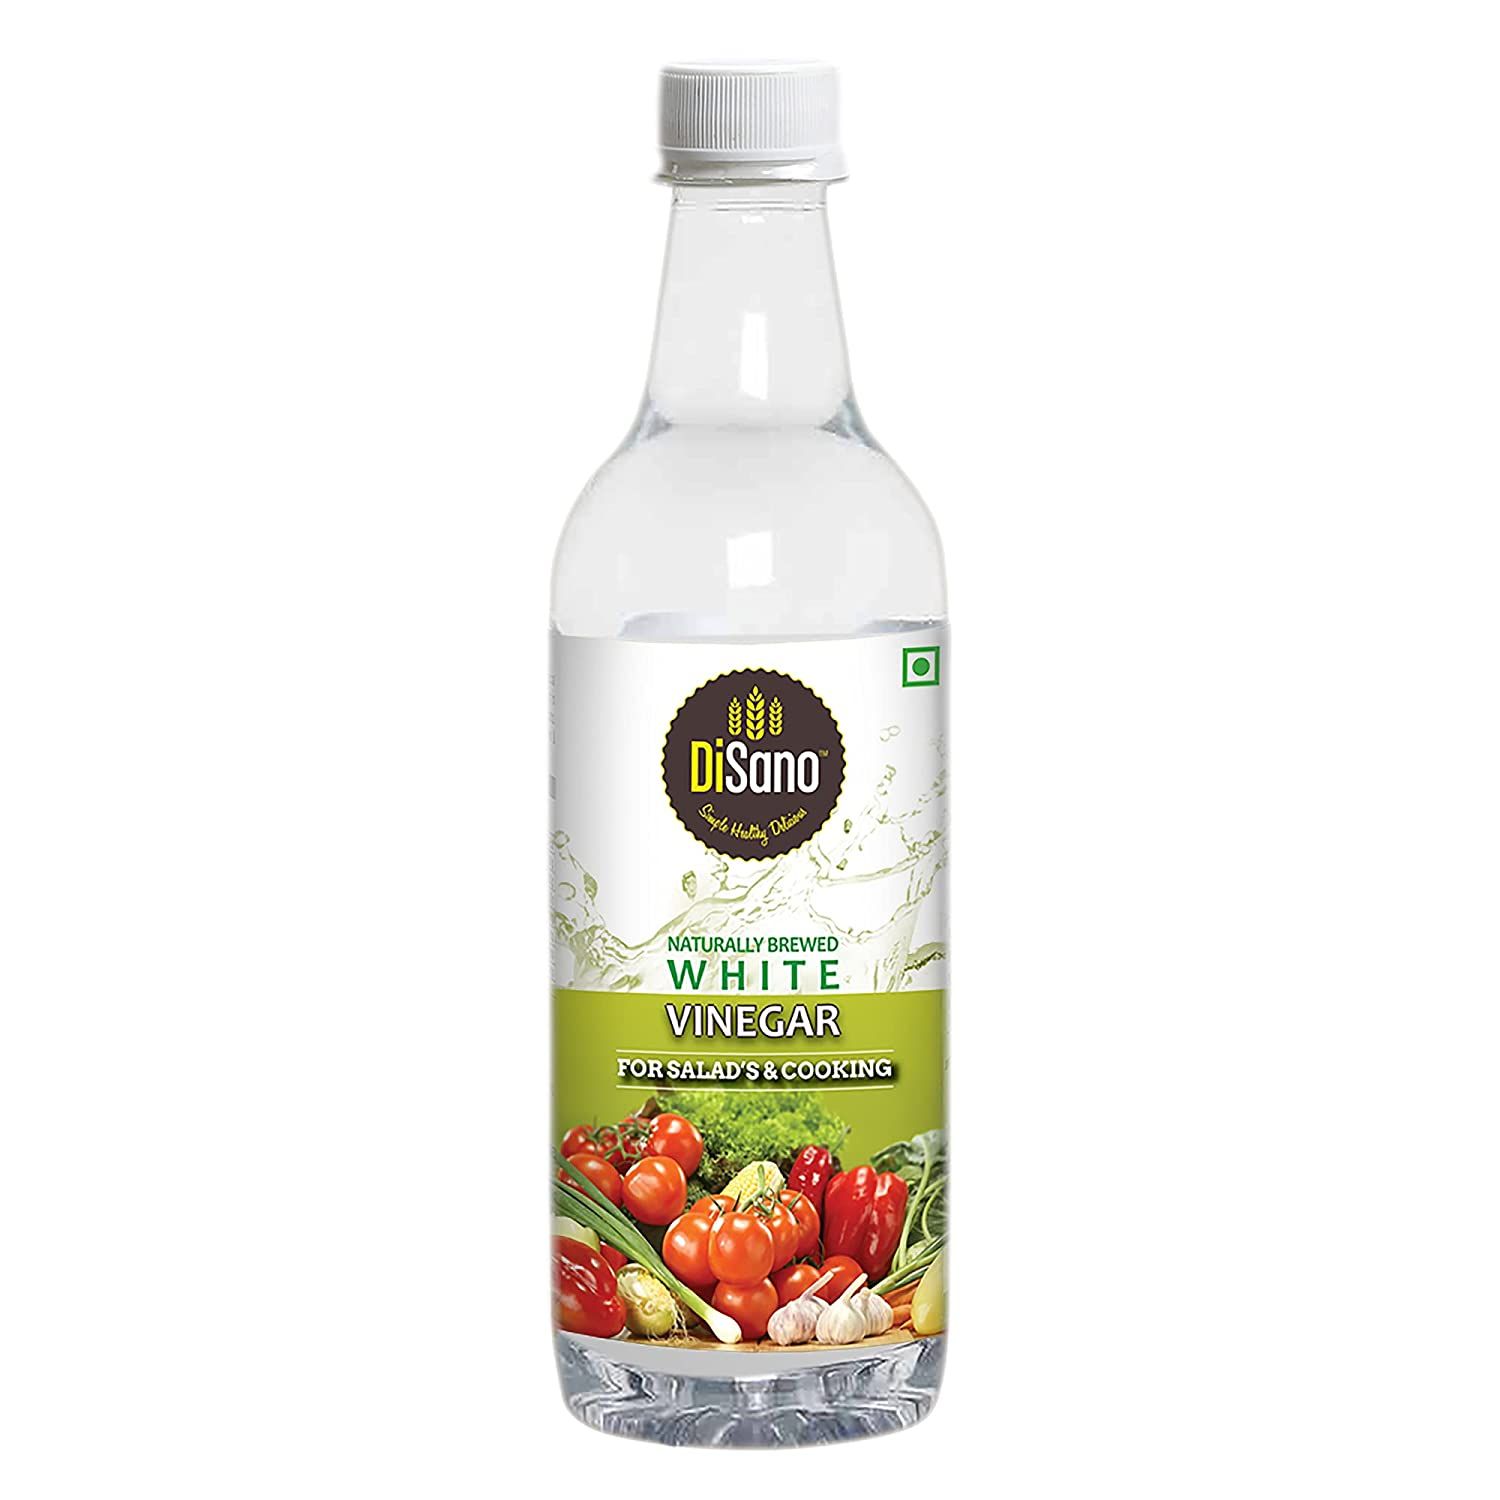 DiSano Naturally Brewed White Vinegar Bottle Image